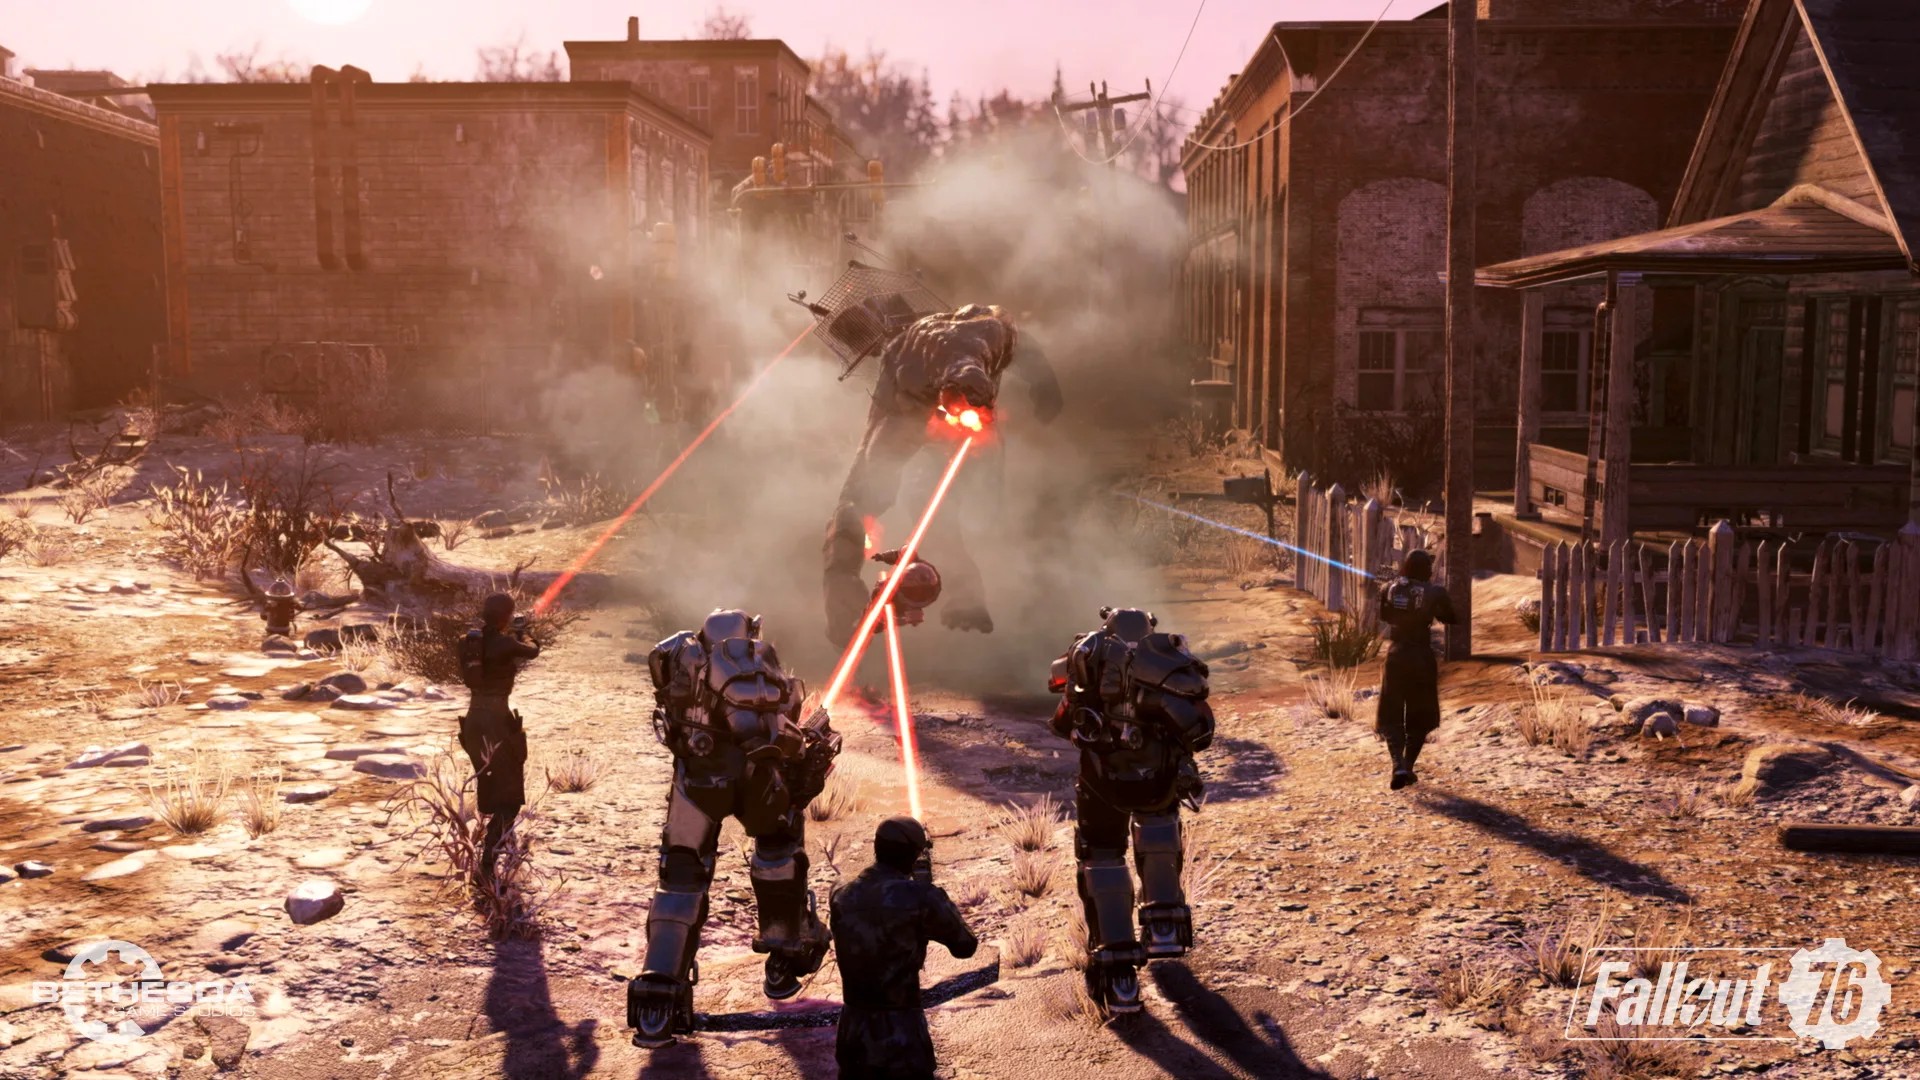 โหมด Battle Royale ของ Fallout 76 จะถูกถอดออกปลายปีนี้ เพราะไม่มีคนเล่น